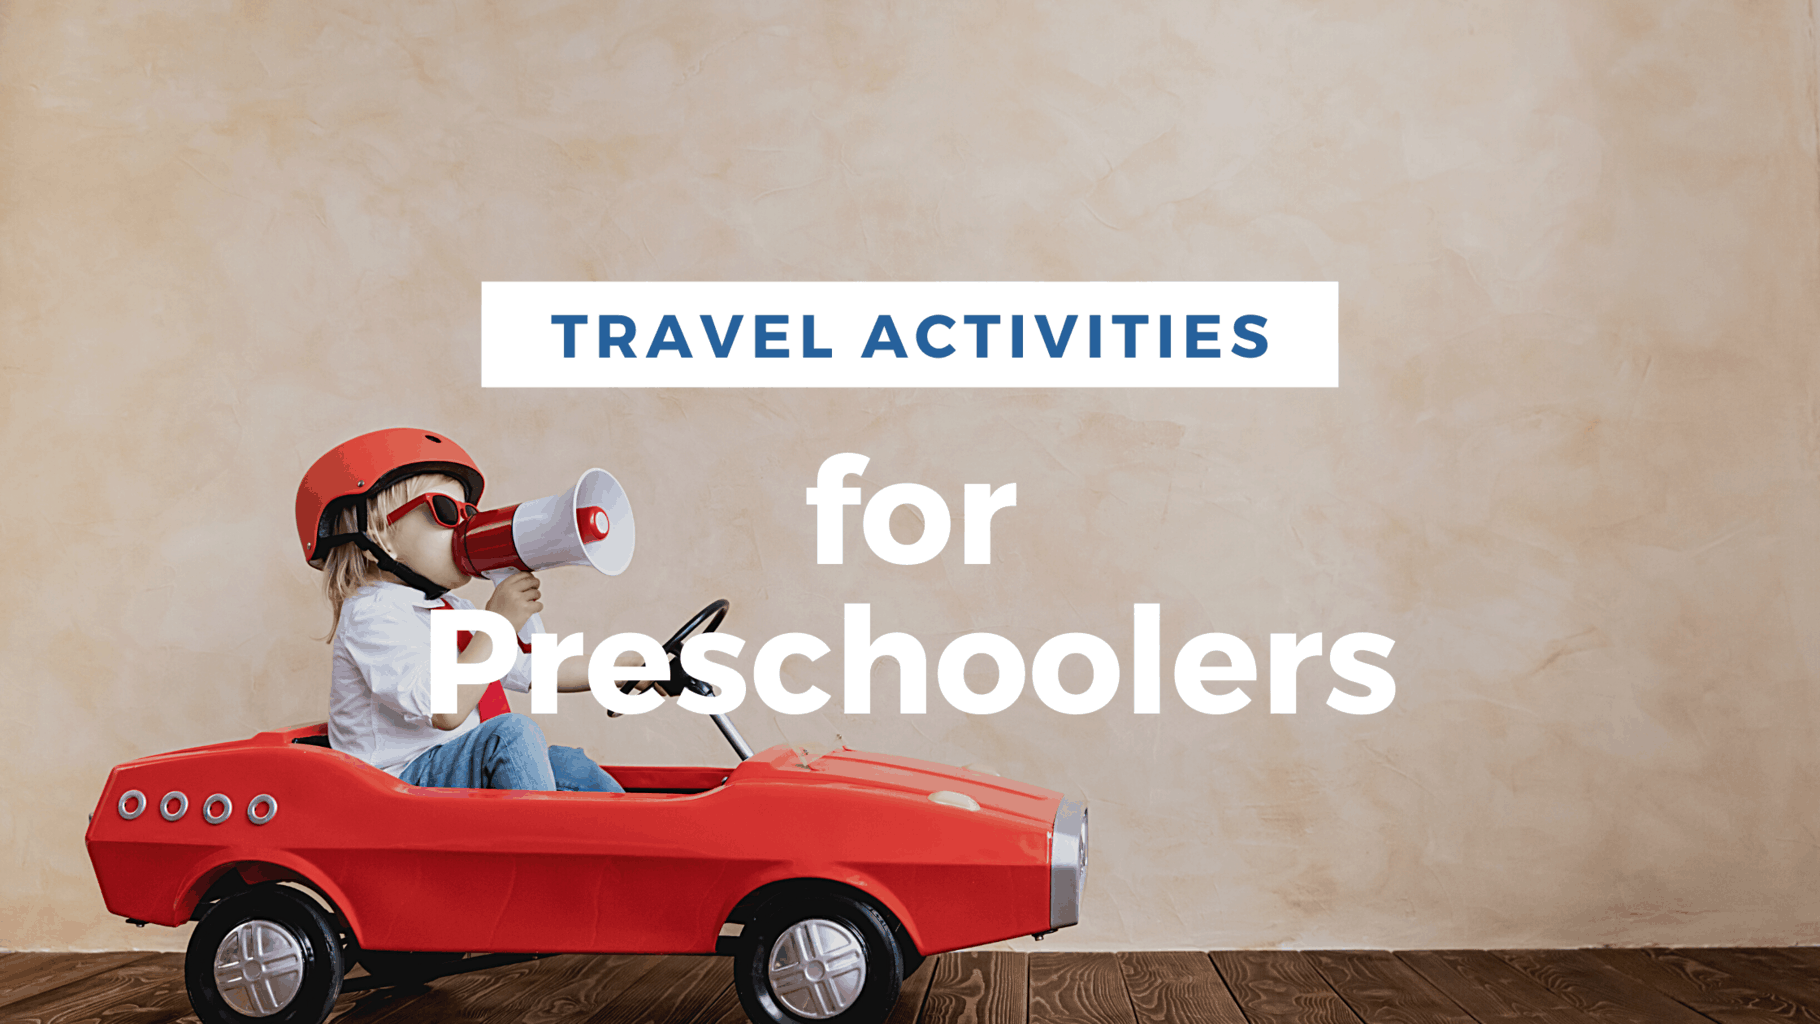 Toddler and Preschool Kids Travel Activities